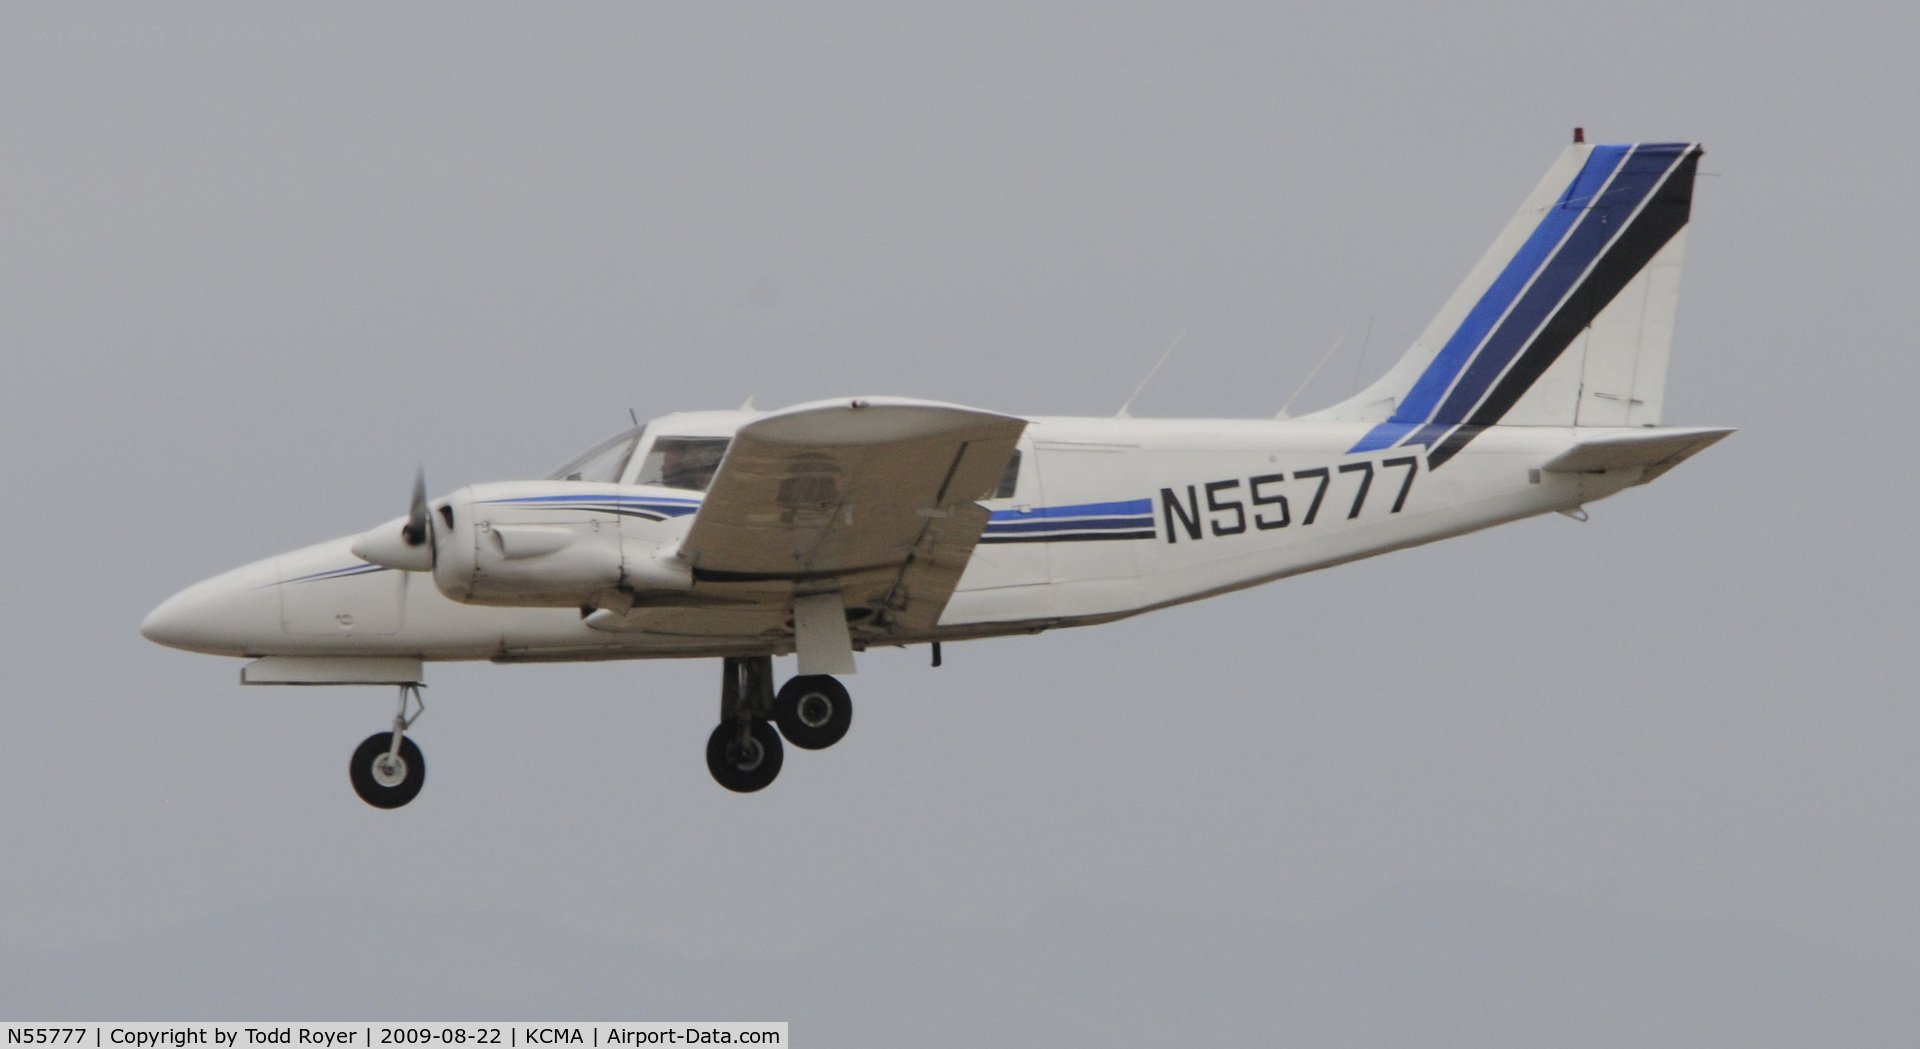 N55777, 1973 Piper PA-34-200 C/N 34-7350244, CAMARILLO AIR SHOW 2009